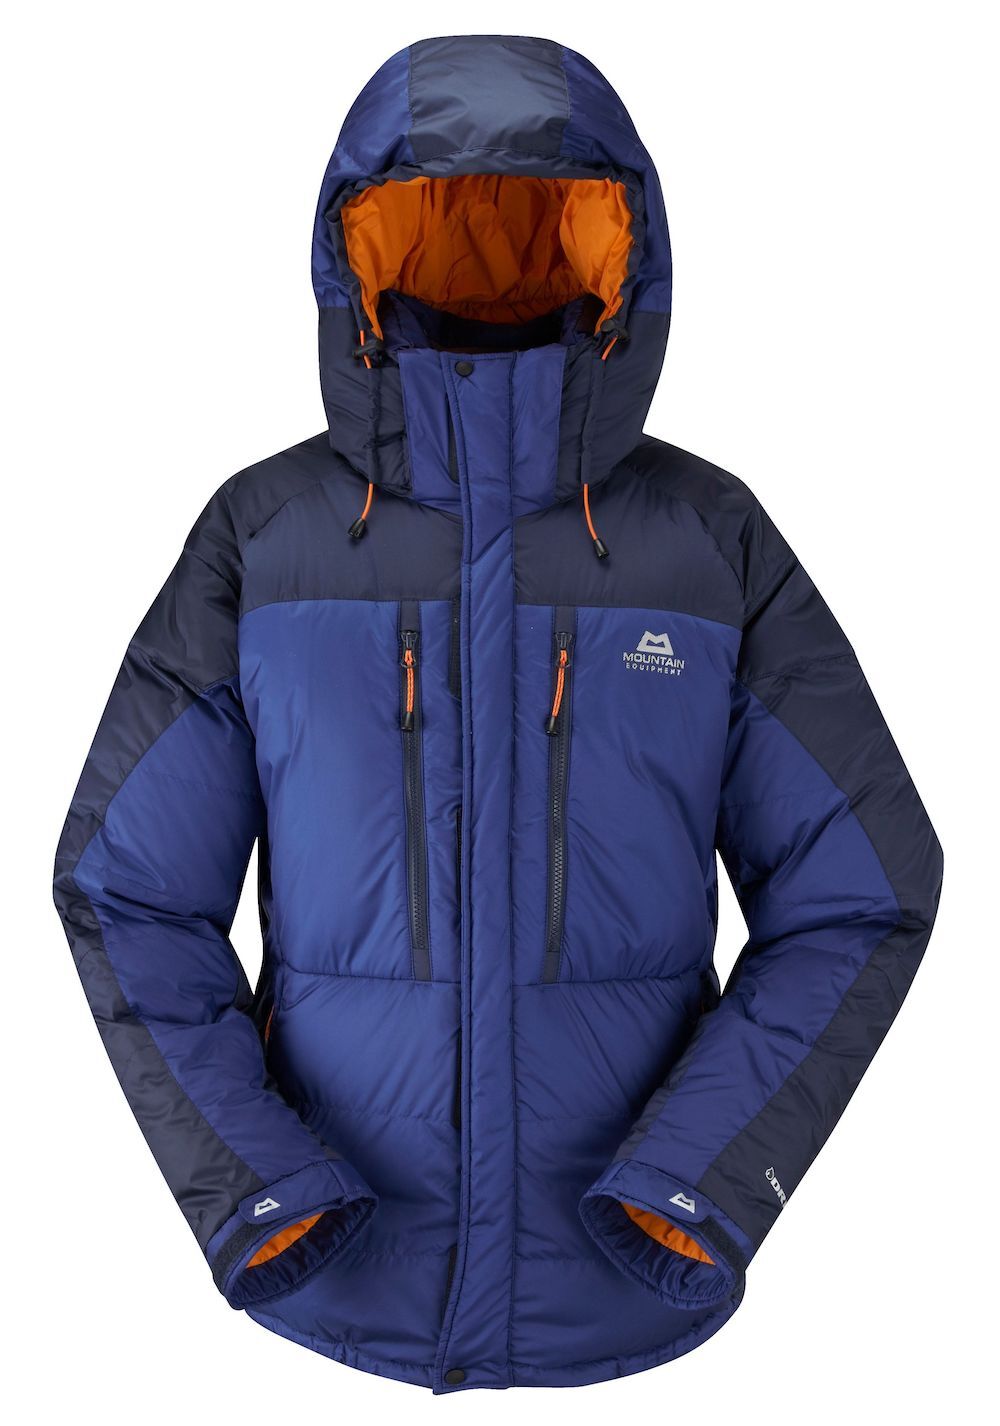 Mountain Equipment Annapurna Jacket - Daunenjacke - Herren